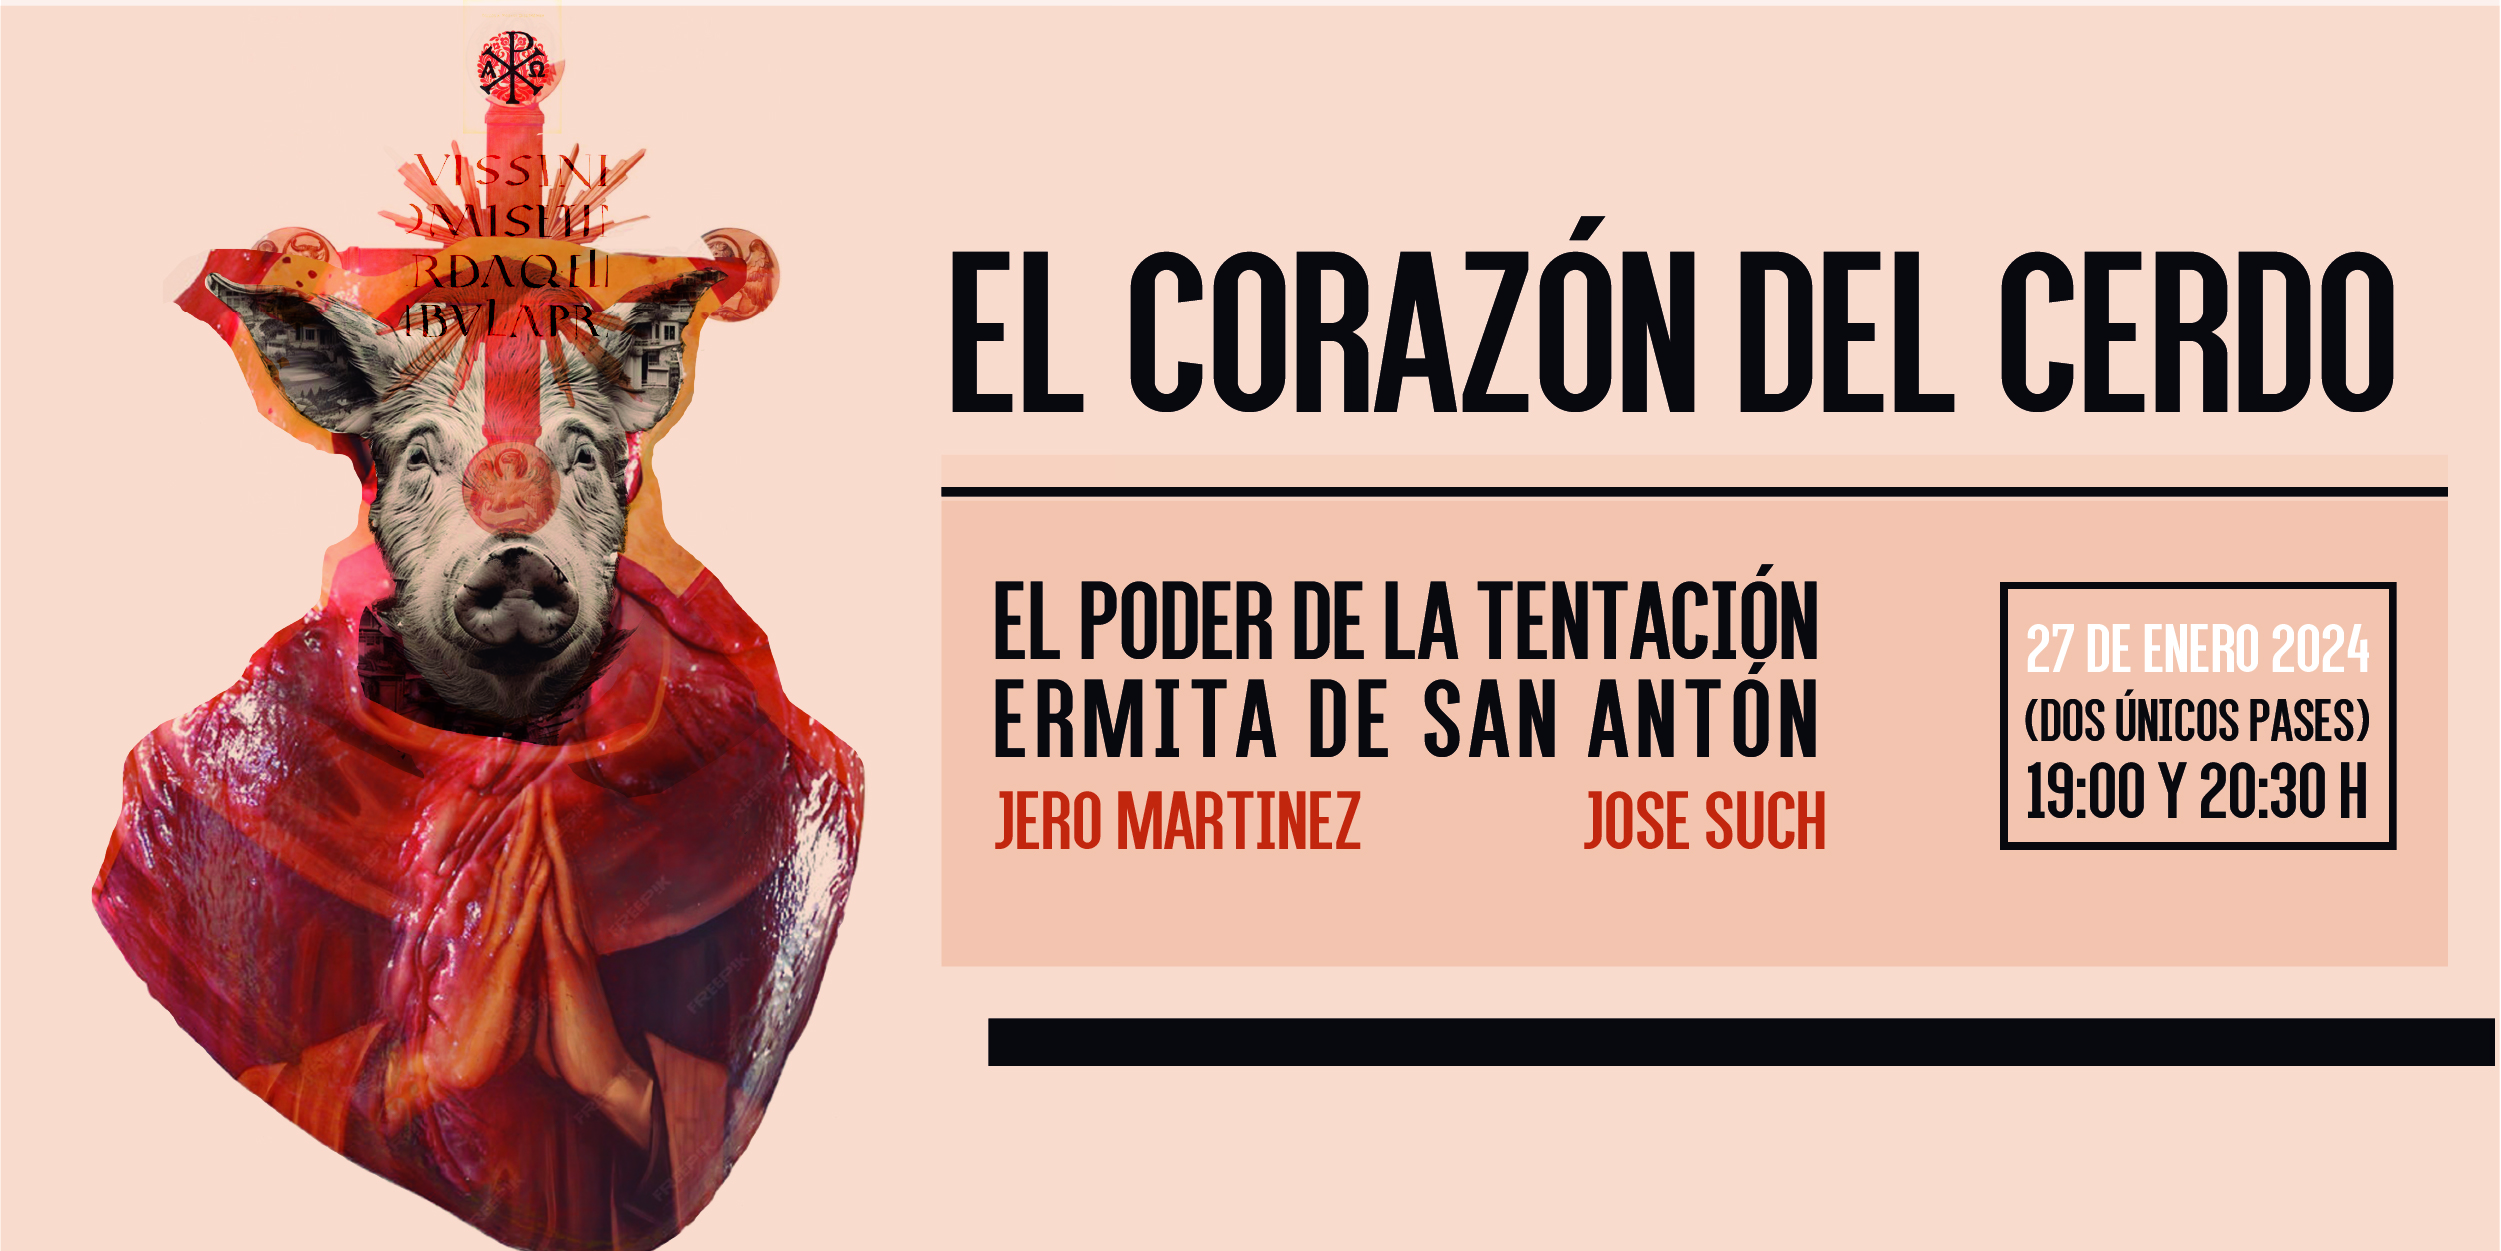 “El corazón del cerdo” cierra las actividades culturales de San Antón